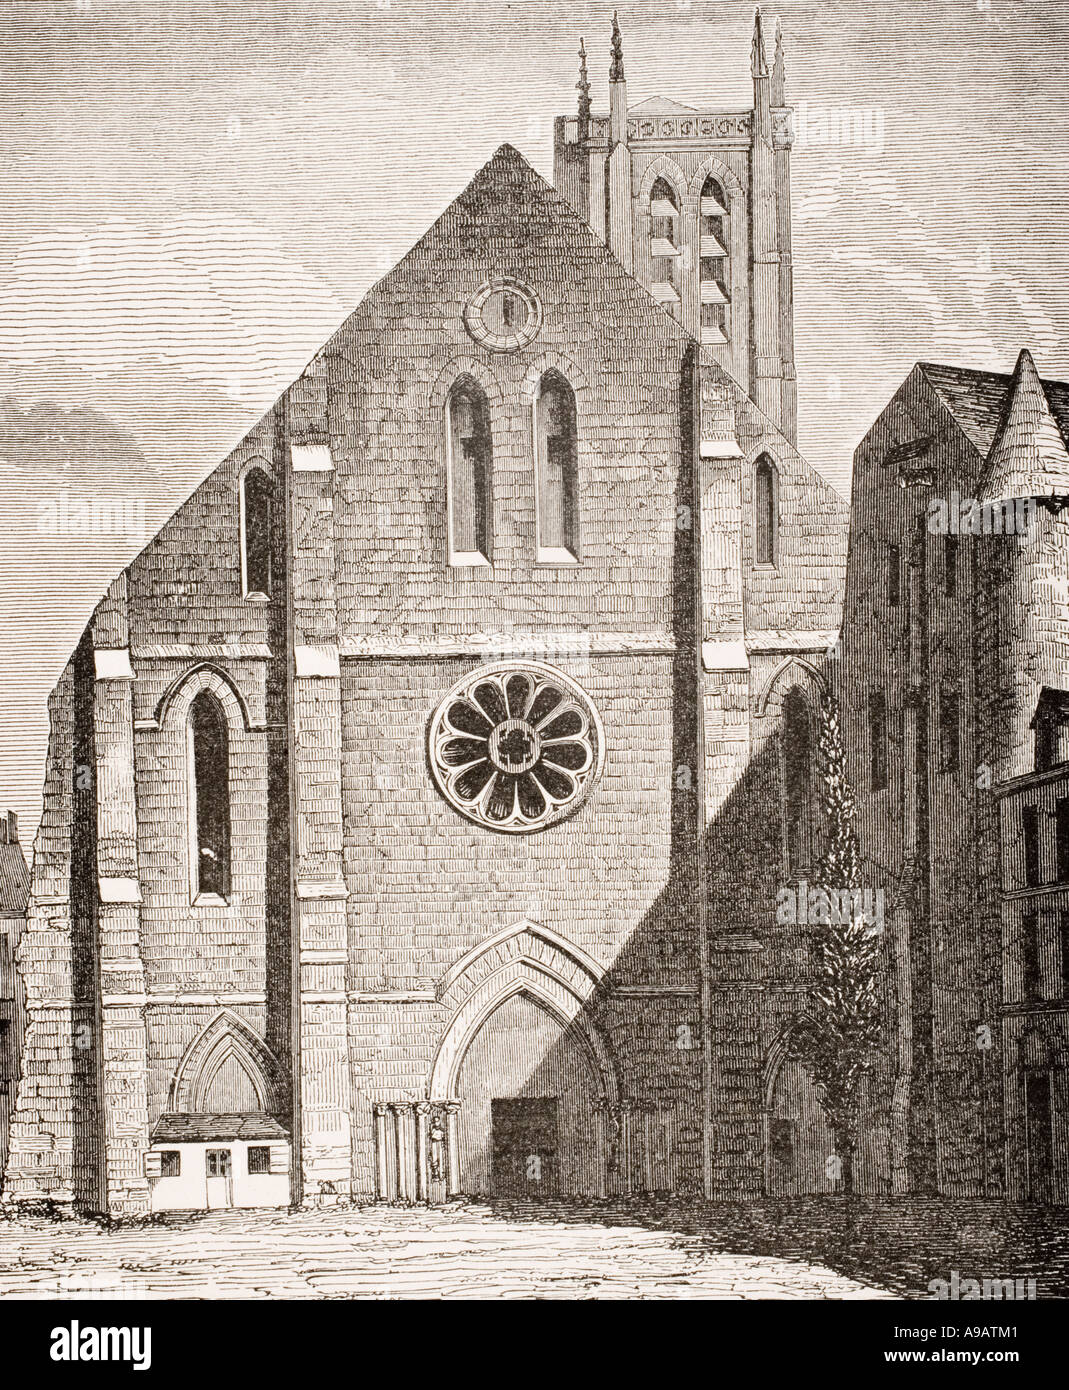 Kirche der Abtei von Sainte Genevieve, Paris, Frankreich. Zustand des Gebäudes vor der Zerstörung am Ende des 18. Jahrhunderts. Stockfoto